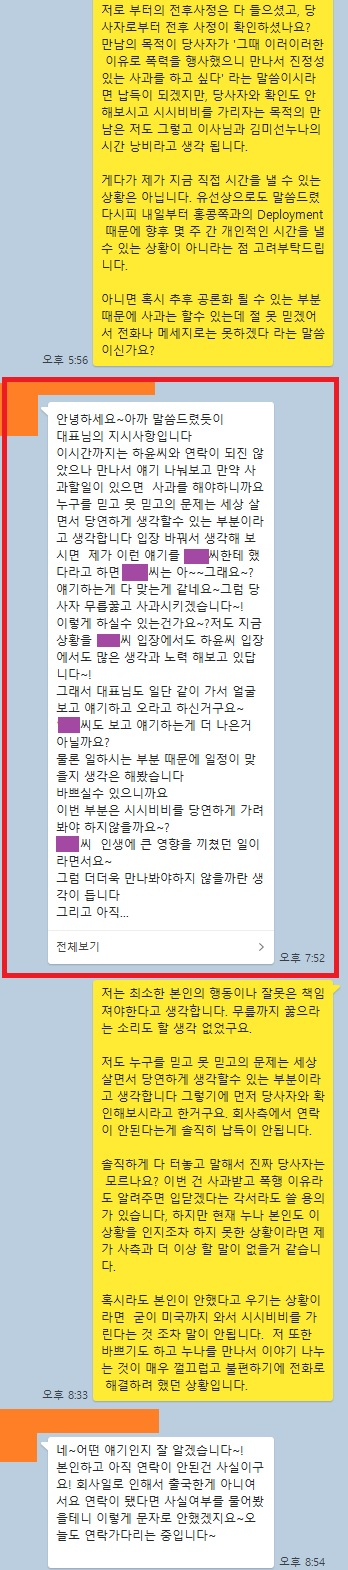 배우 송하윤의 학폭 사건 피해자라고 주장하는 남성의 폭로글이 온라인상에서 화제다. /사진=온라인 커뮤니티 캡처